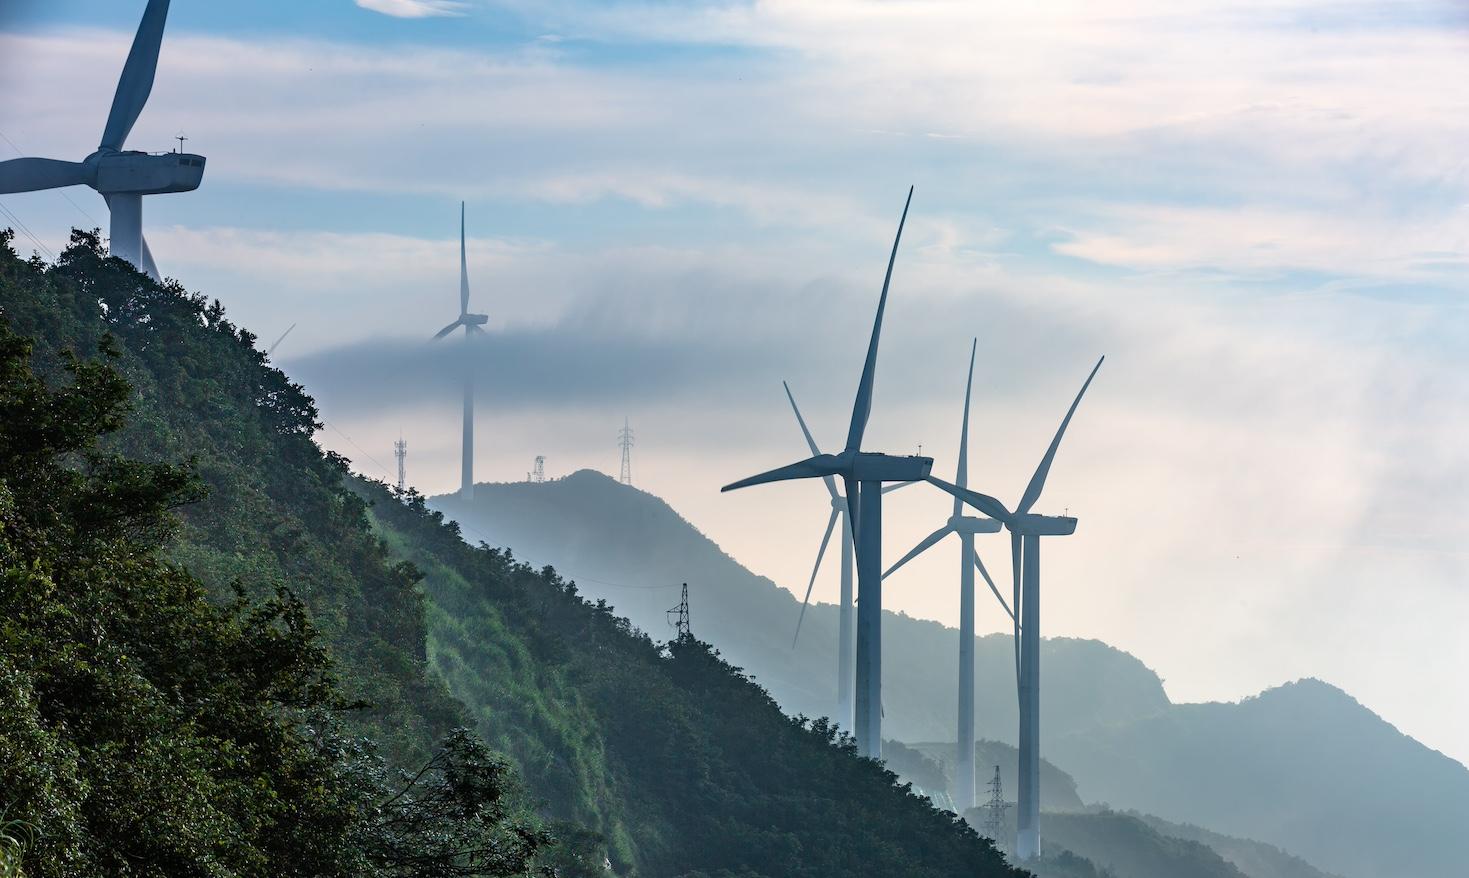 Heyuan Queyashan Wind Farm in Guangdong, China